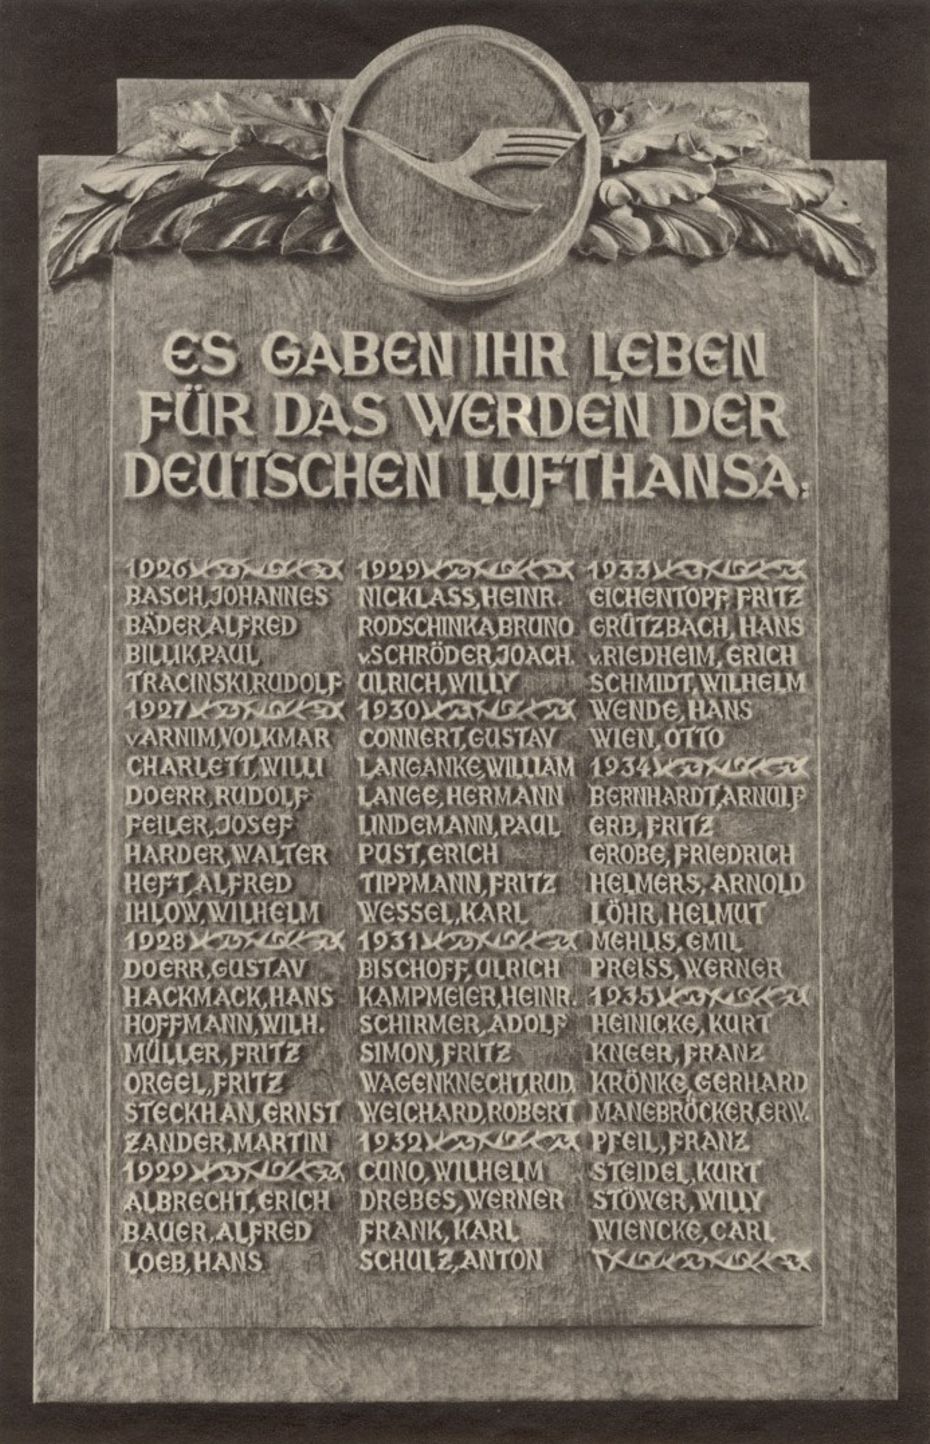 Liste der zwischen 1920 und 1920 verunglckten Piloten der Lufthansa